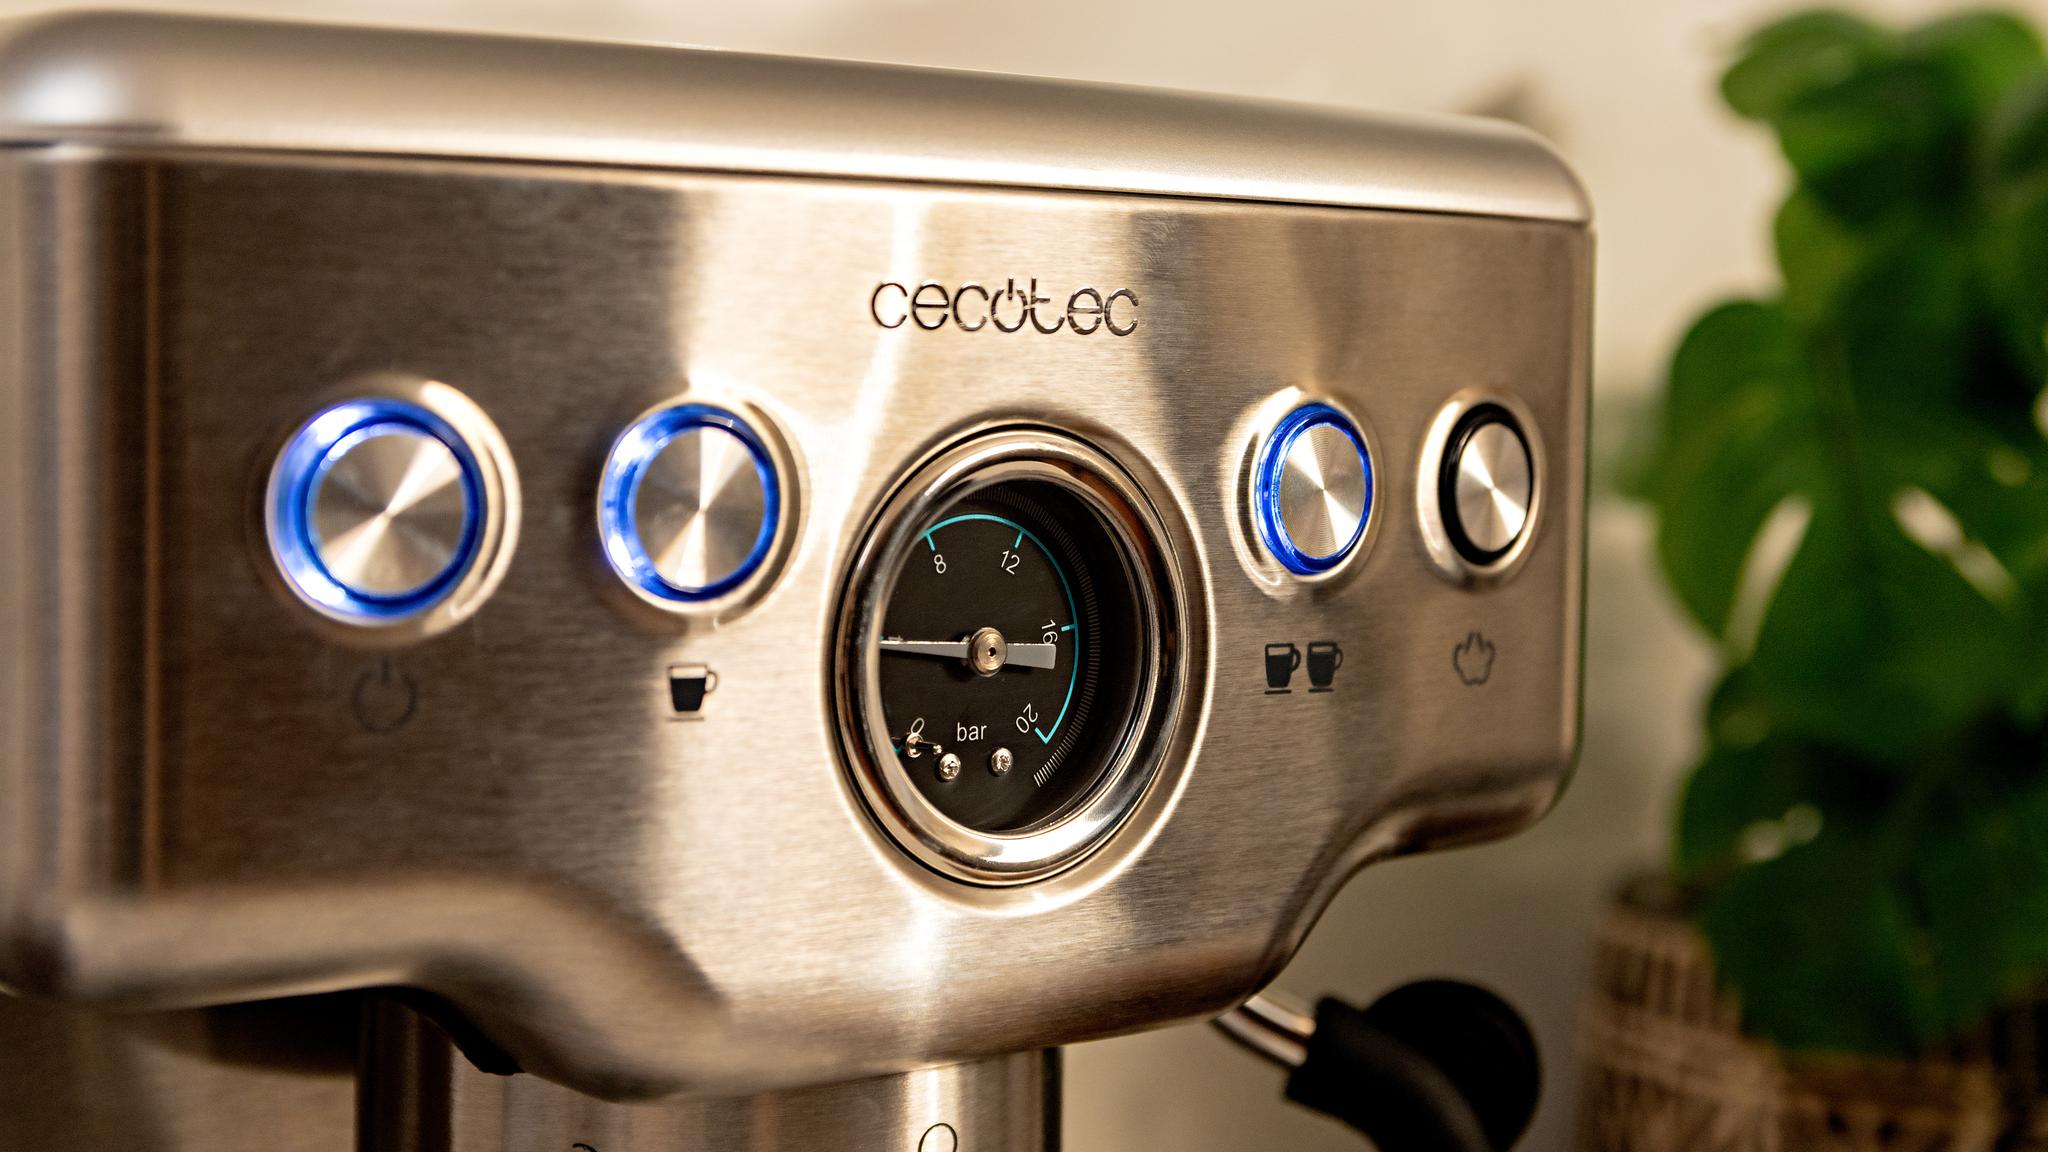 Power Espresso 20 Barista Compact Cafetera barista Cecotec